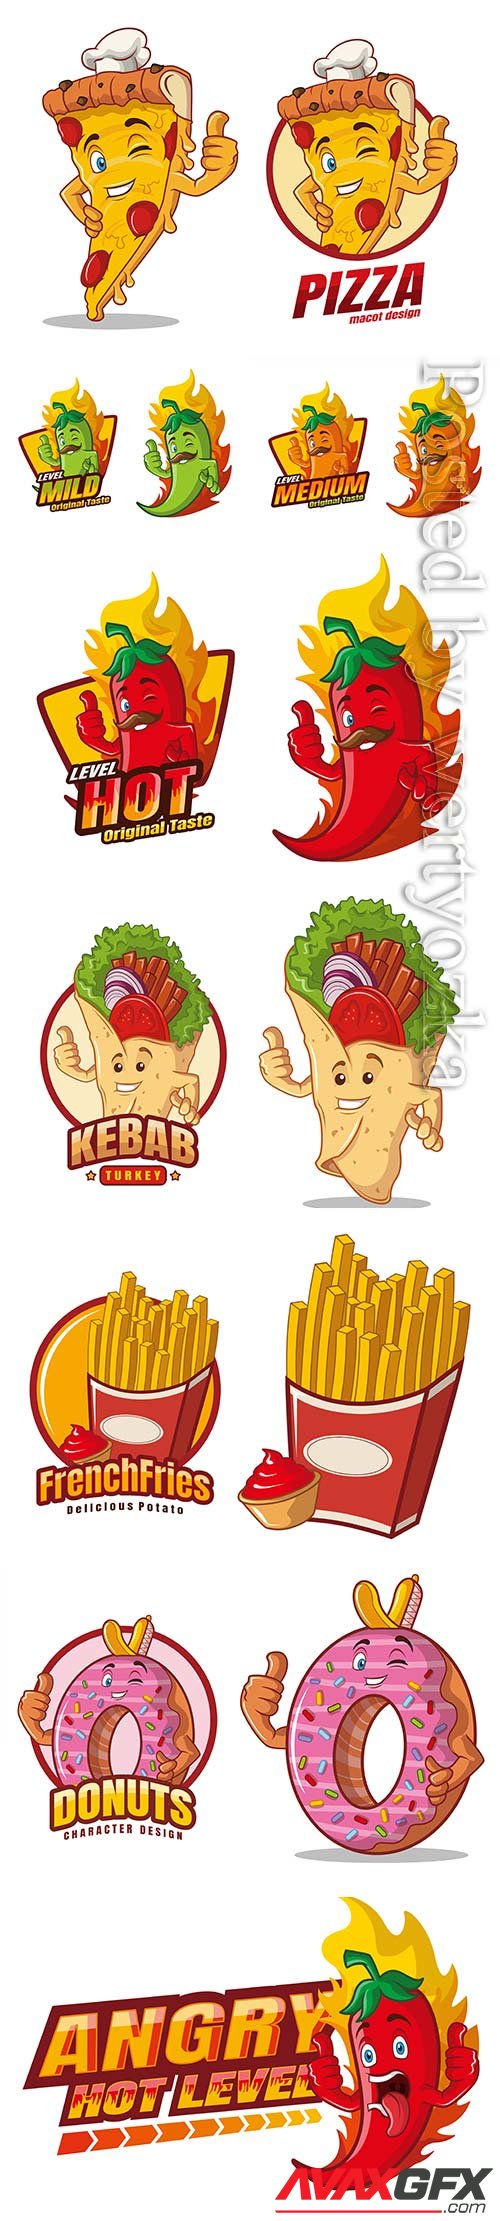 Food cartoon character mascot vector design